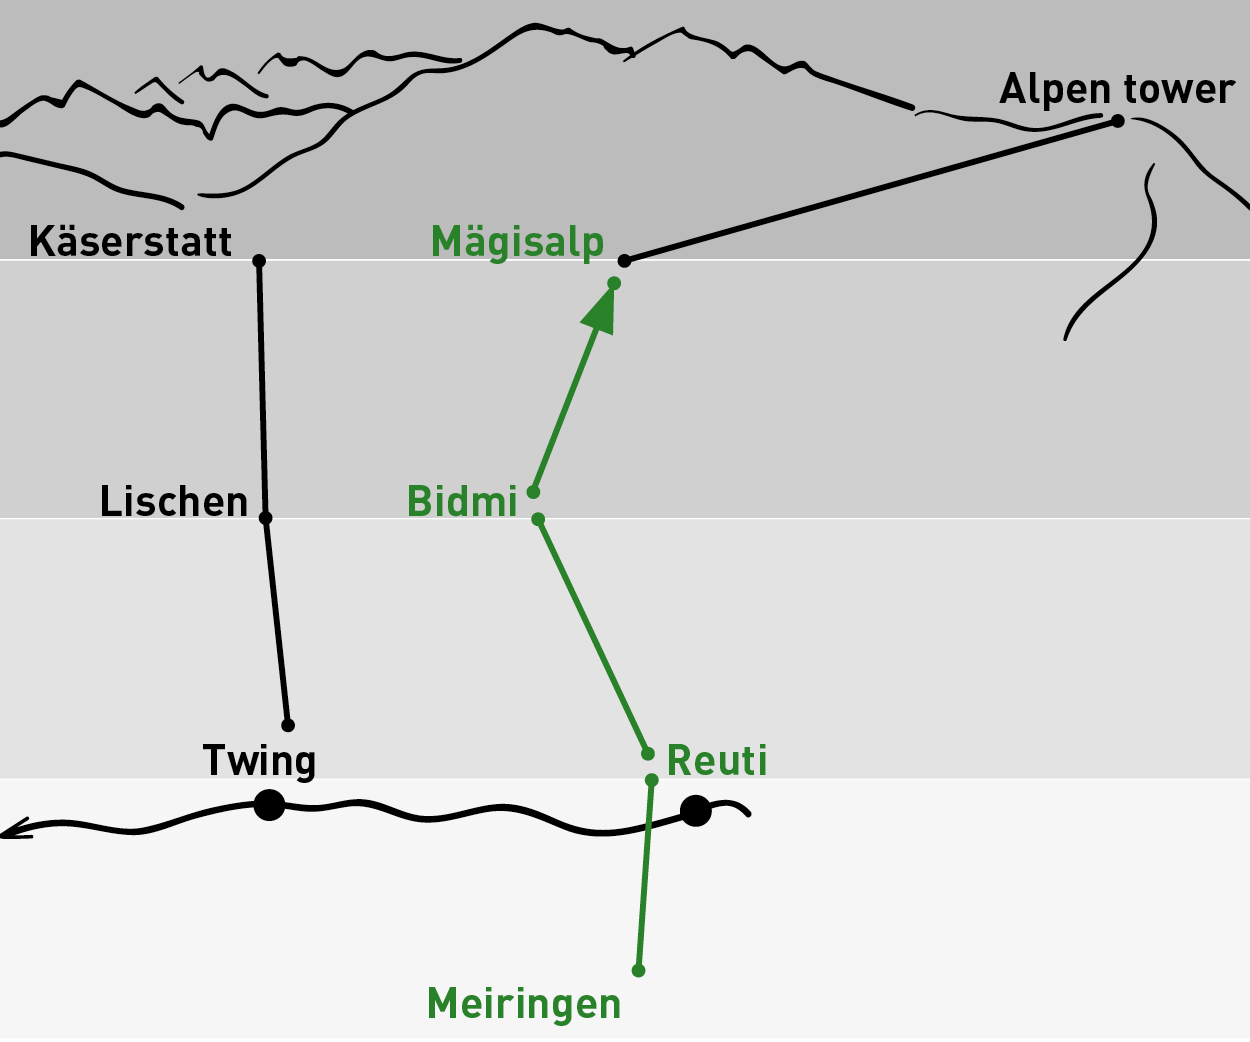 Meiringen – Mägisalp | One-way trip